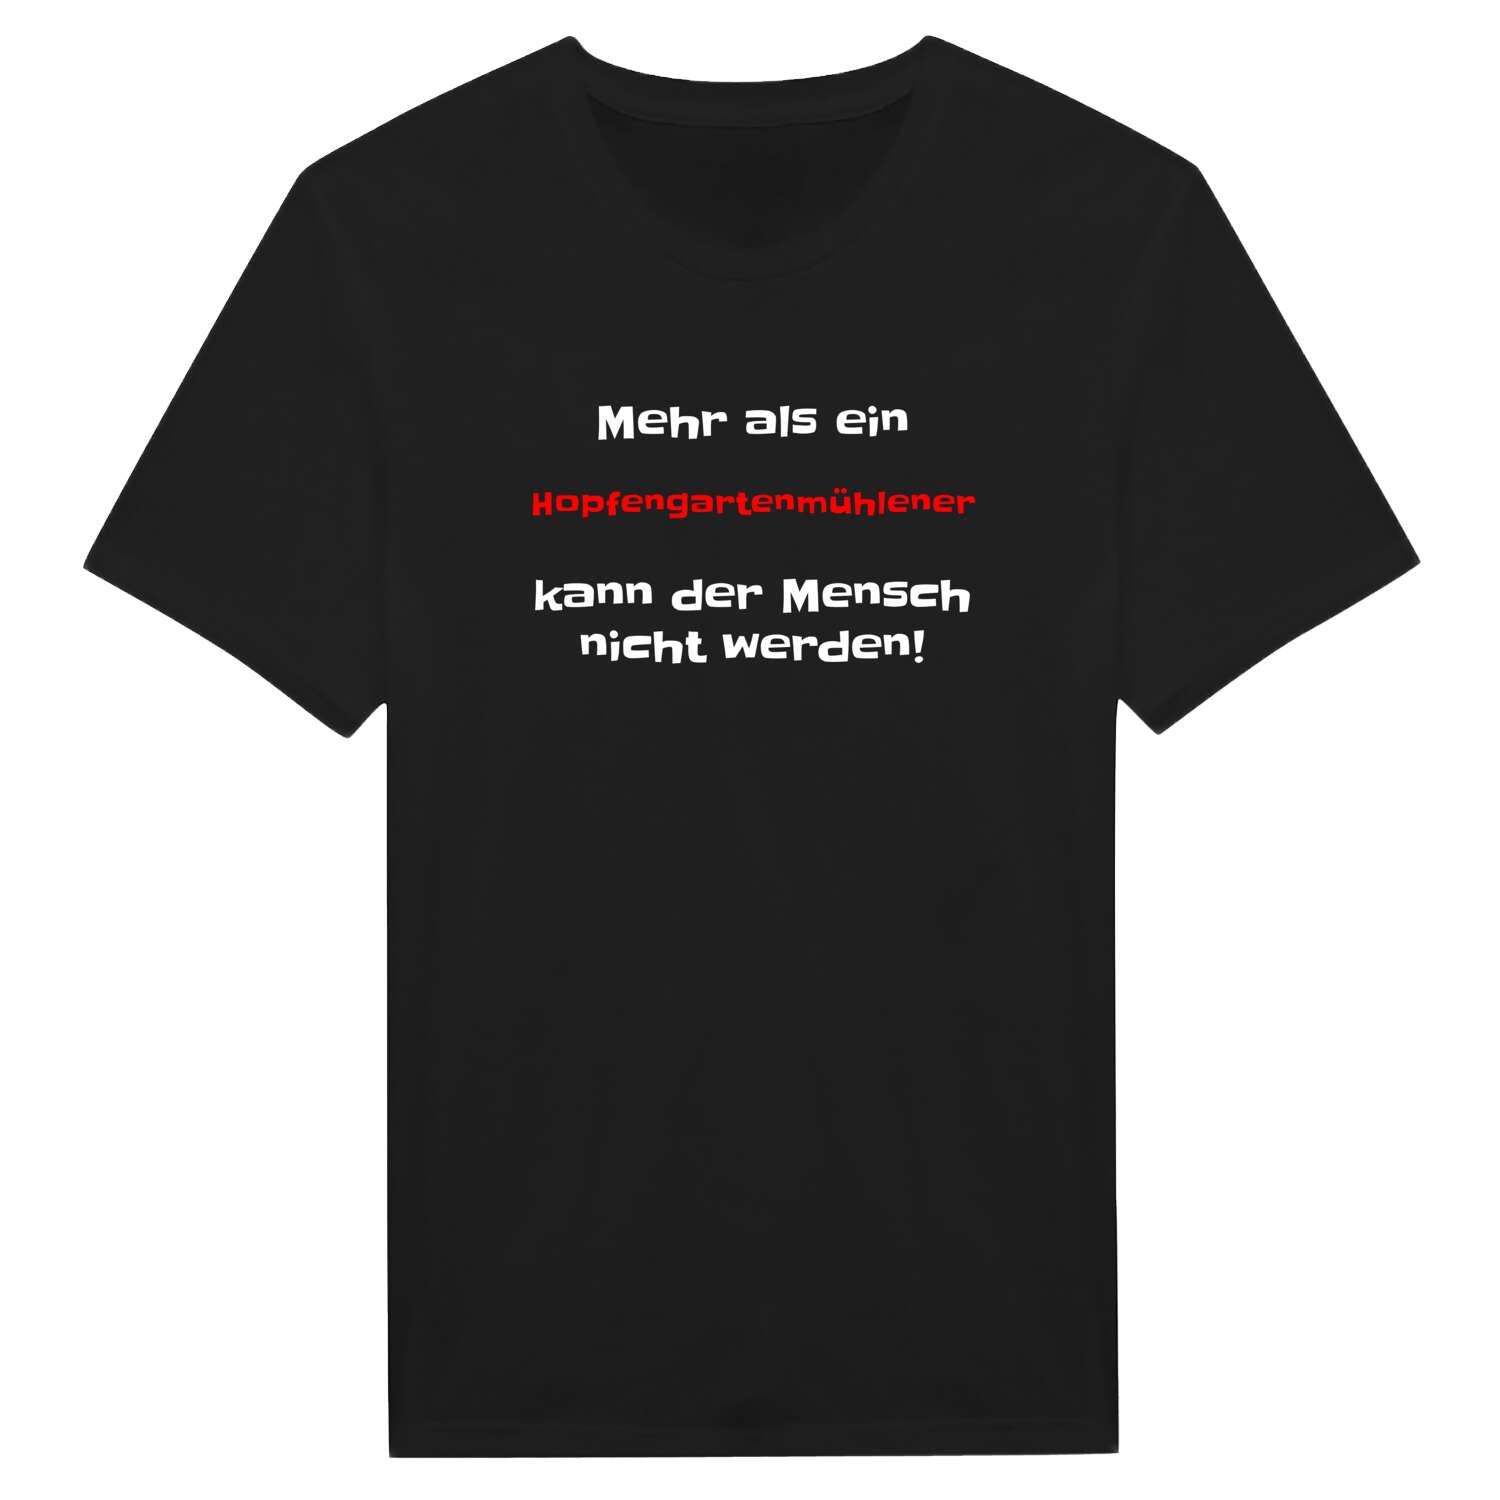 Hopfengartenmühle T-Shirt »Mehr als ein«